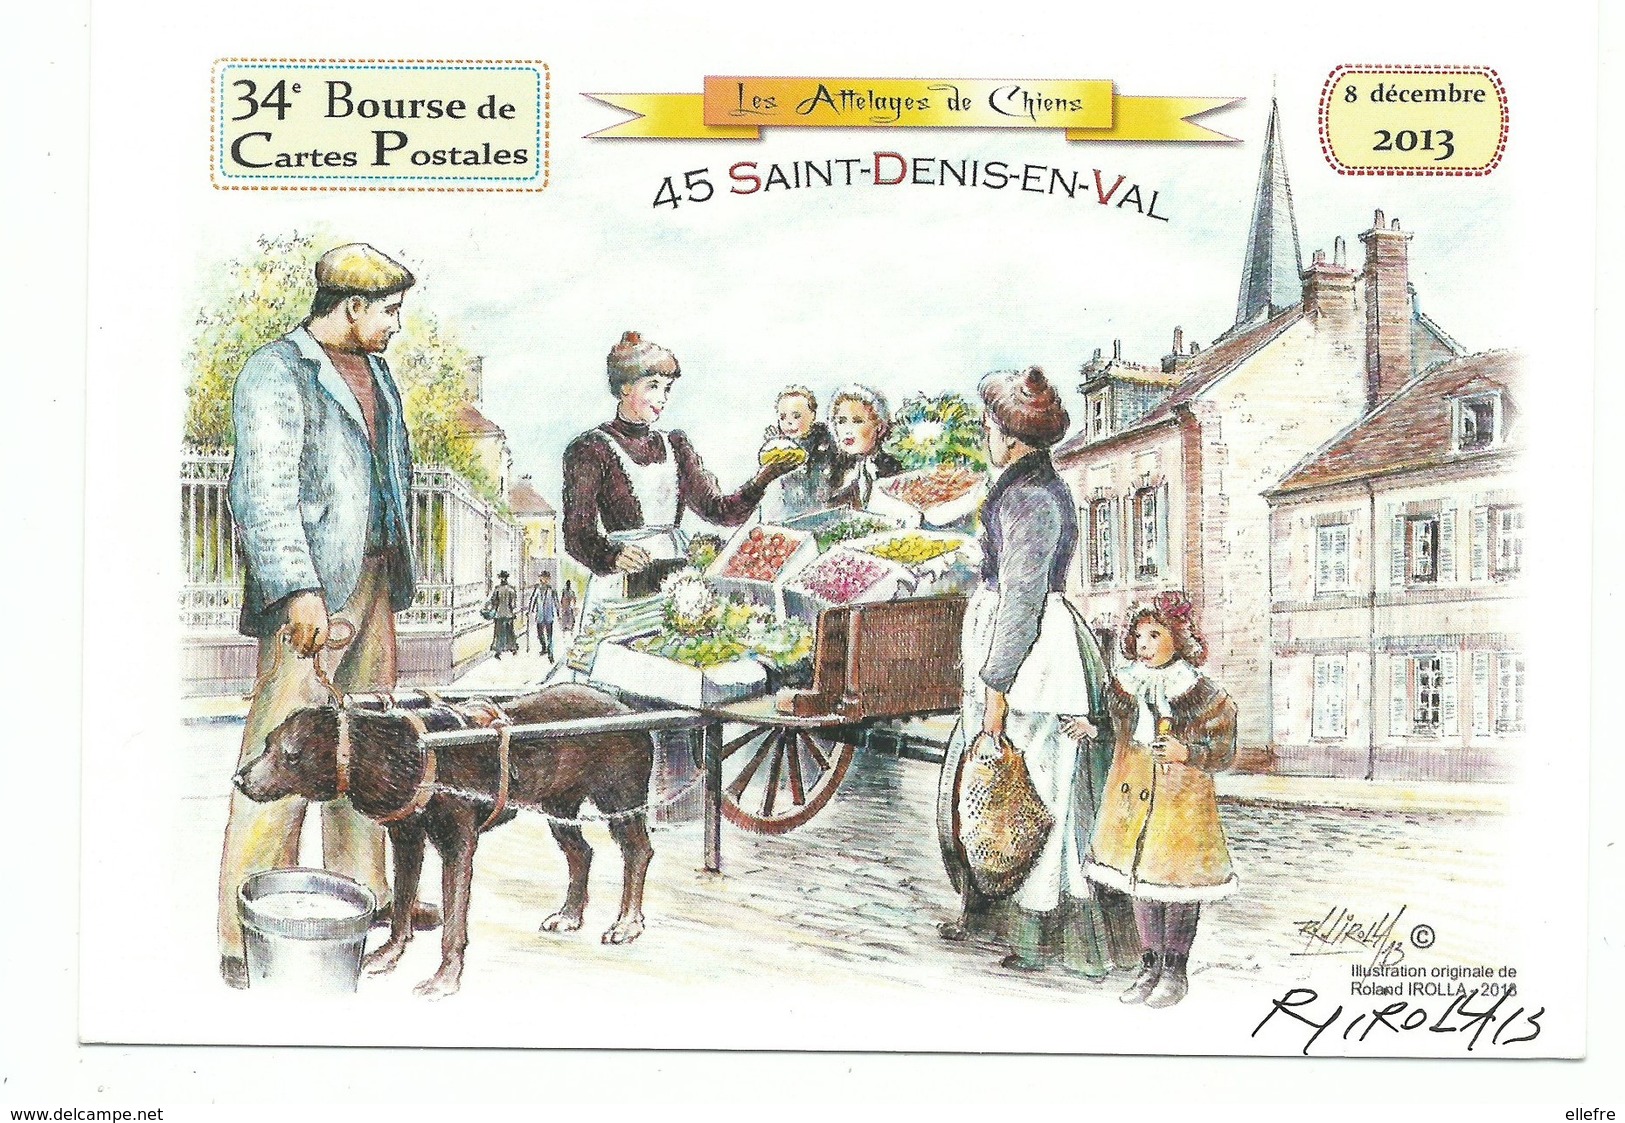 CPM 45 Saint Denis En Val 34 ème Bourse De Carte Postale 2013 Attelage De Chien Marchande De 4 Saisons - Bourses & Salons De Collections